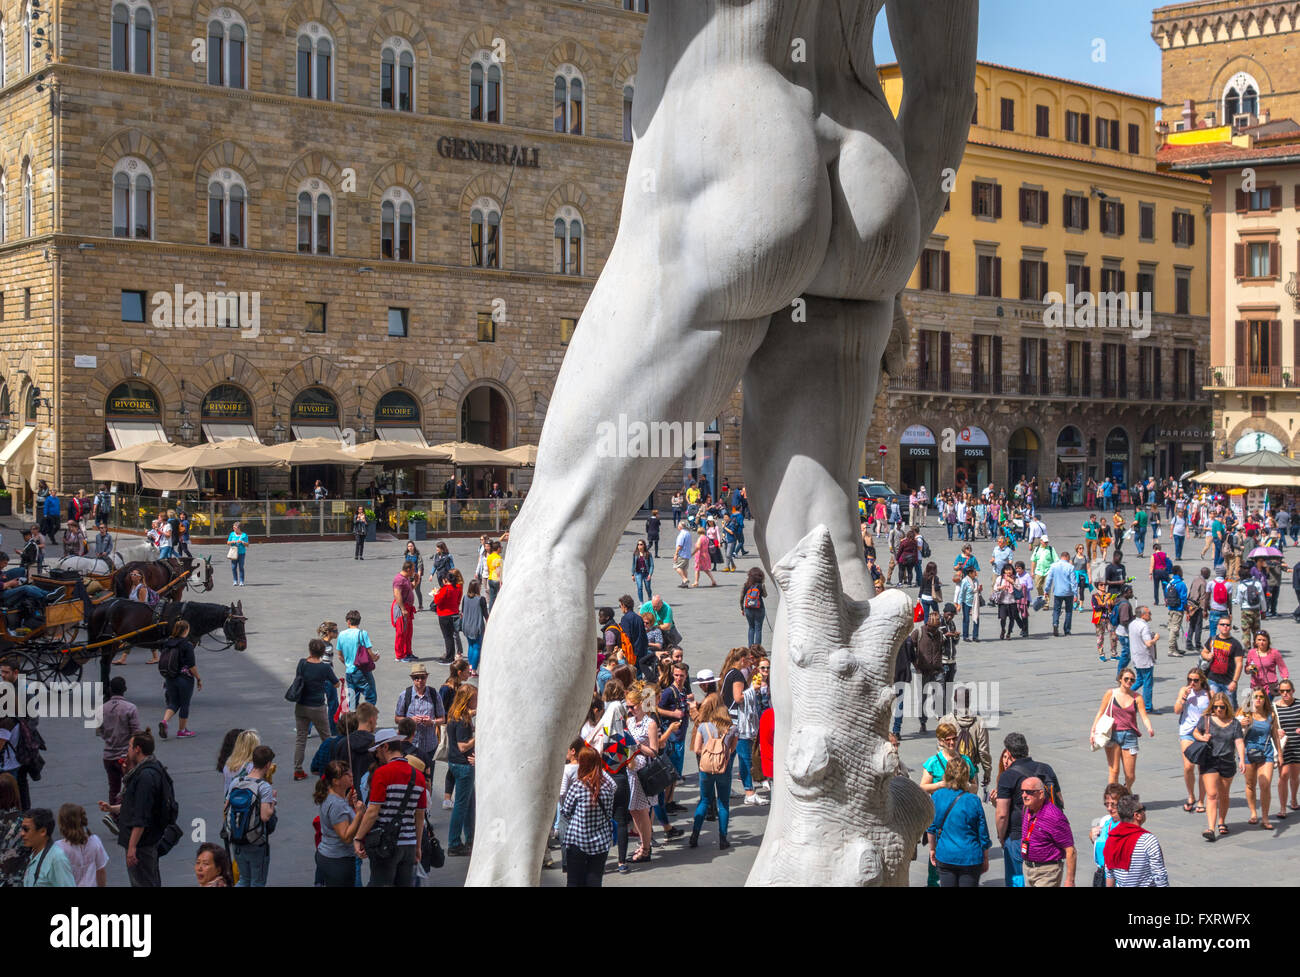 Florenz Italien. David von Michelangelo auf der Piazza della Signoria Platz Florenz mit Touristen. Statue von David von hinten gesehen. Stockfoto